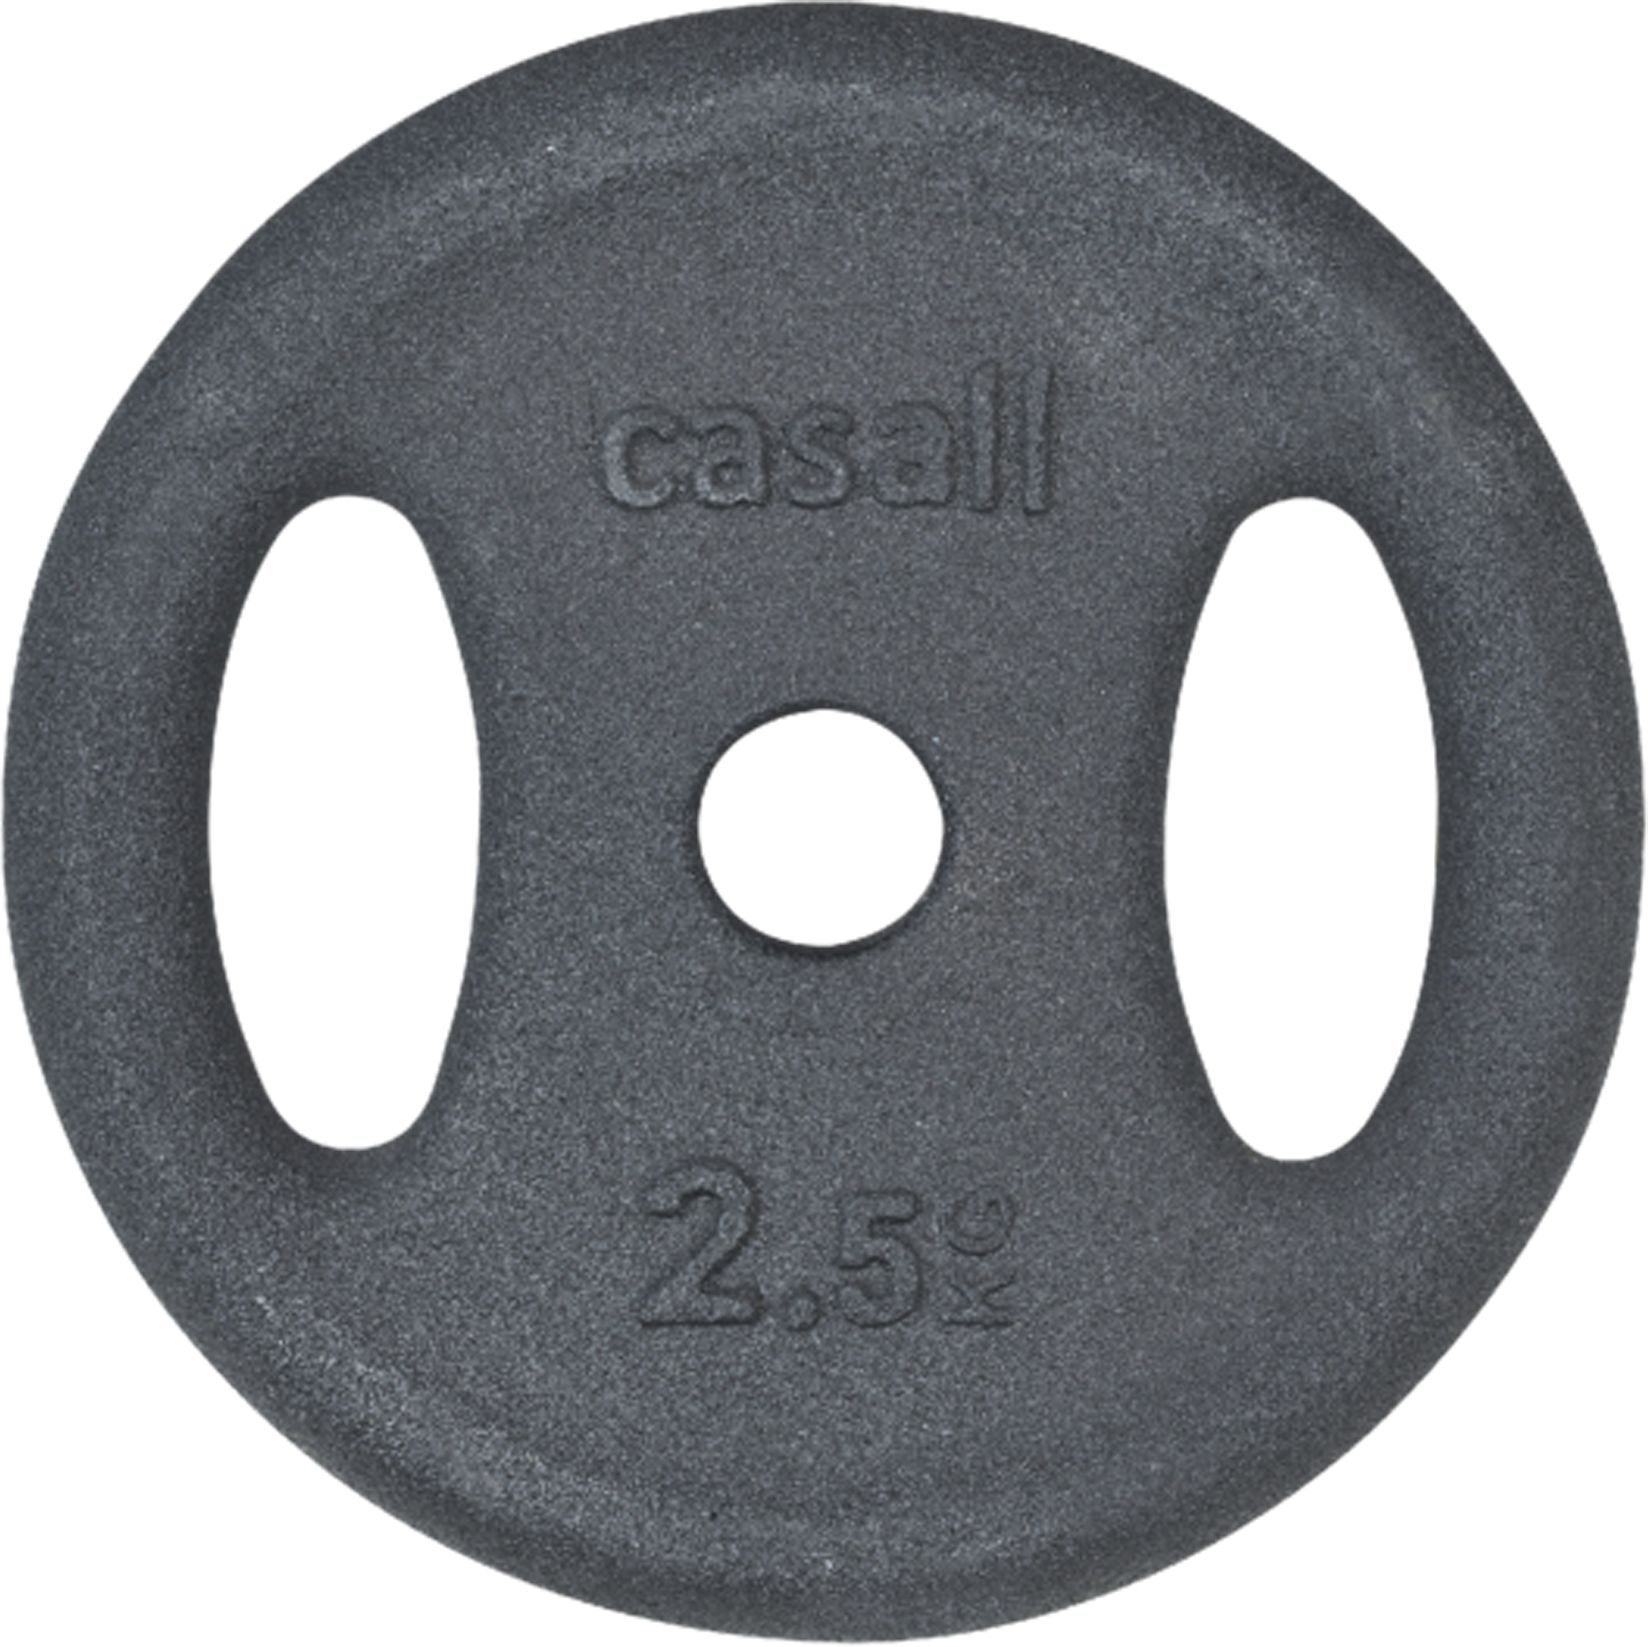 CASALL, WEIGHT PLATE GRIP 1*2,5KG